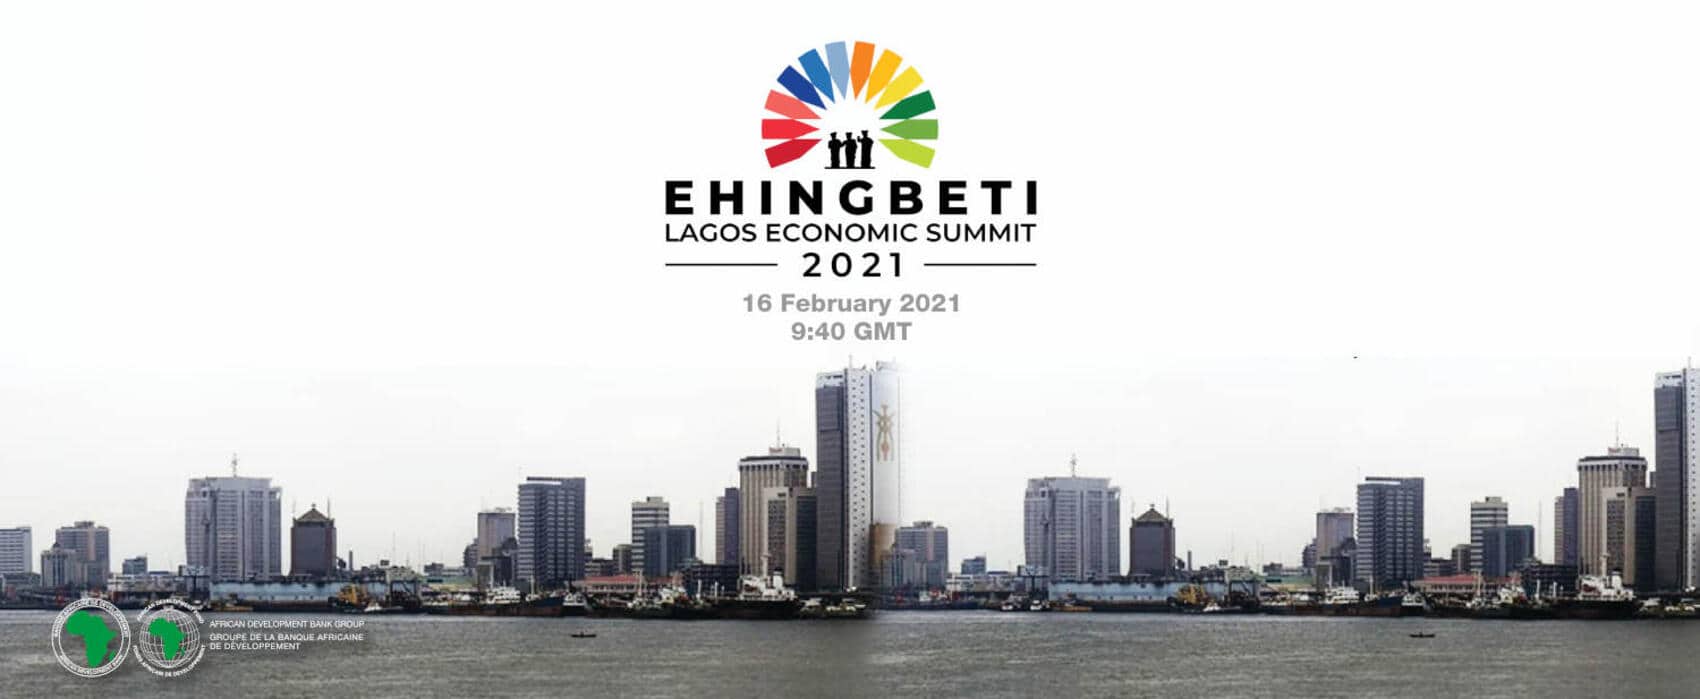 Lagos Economic Summit (Ehingbeti),